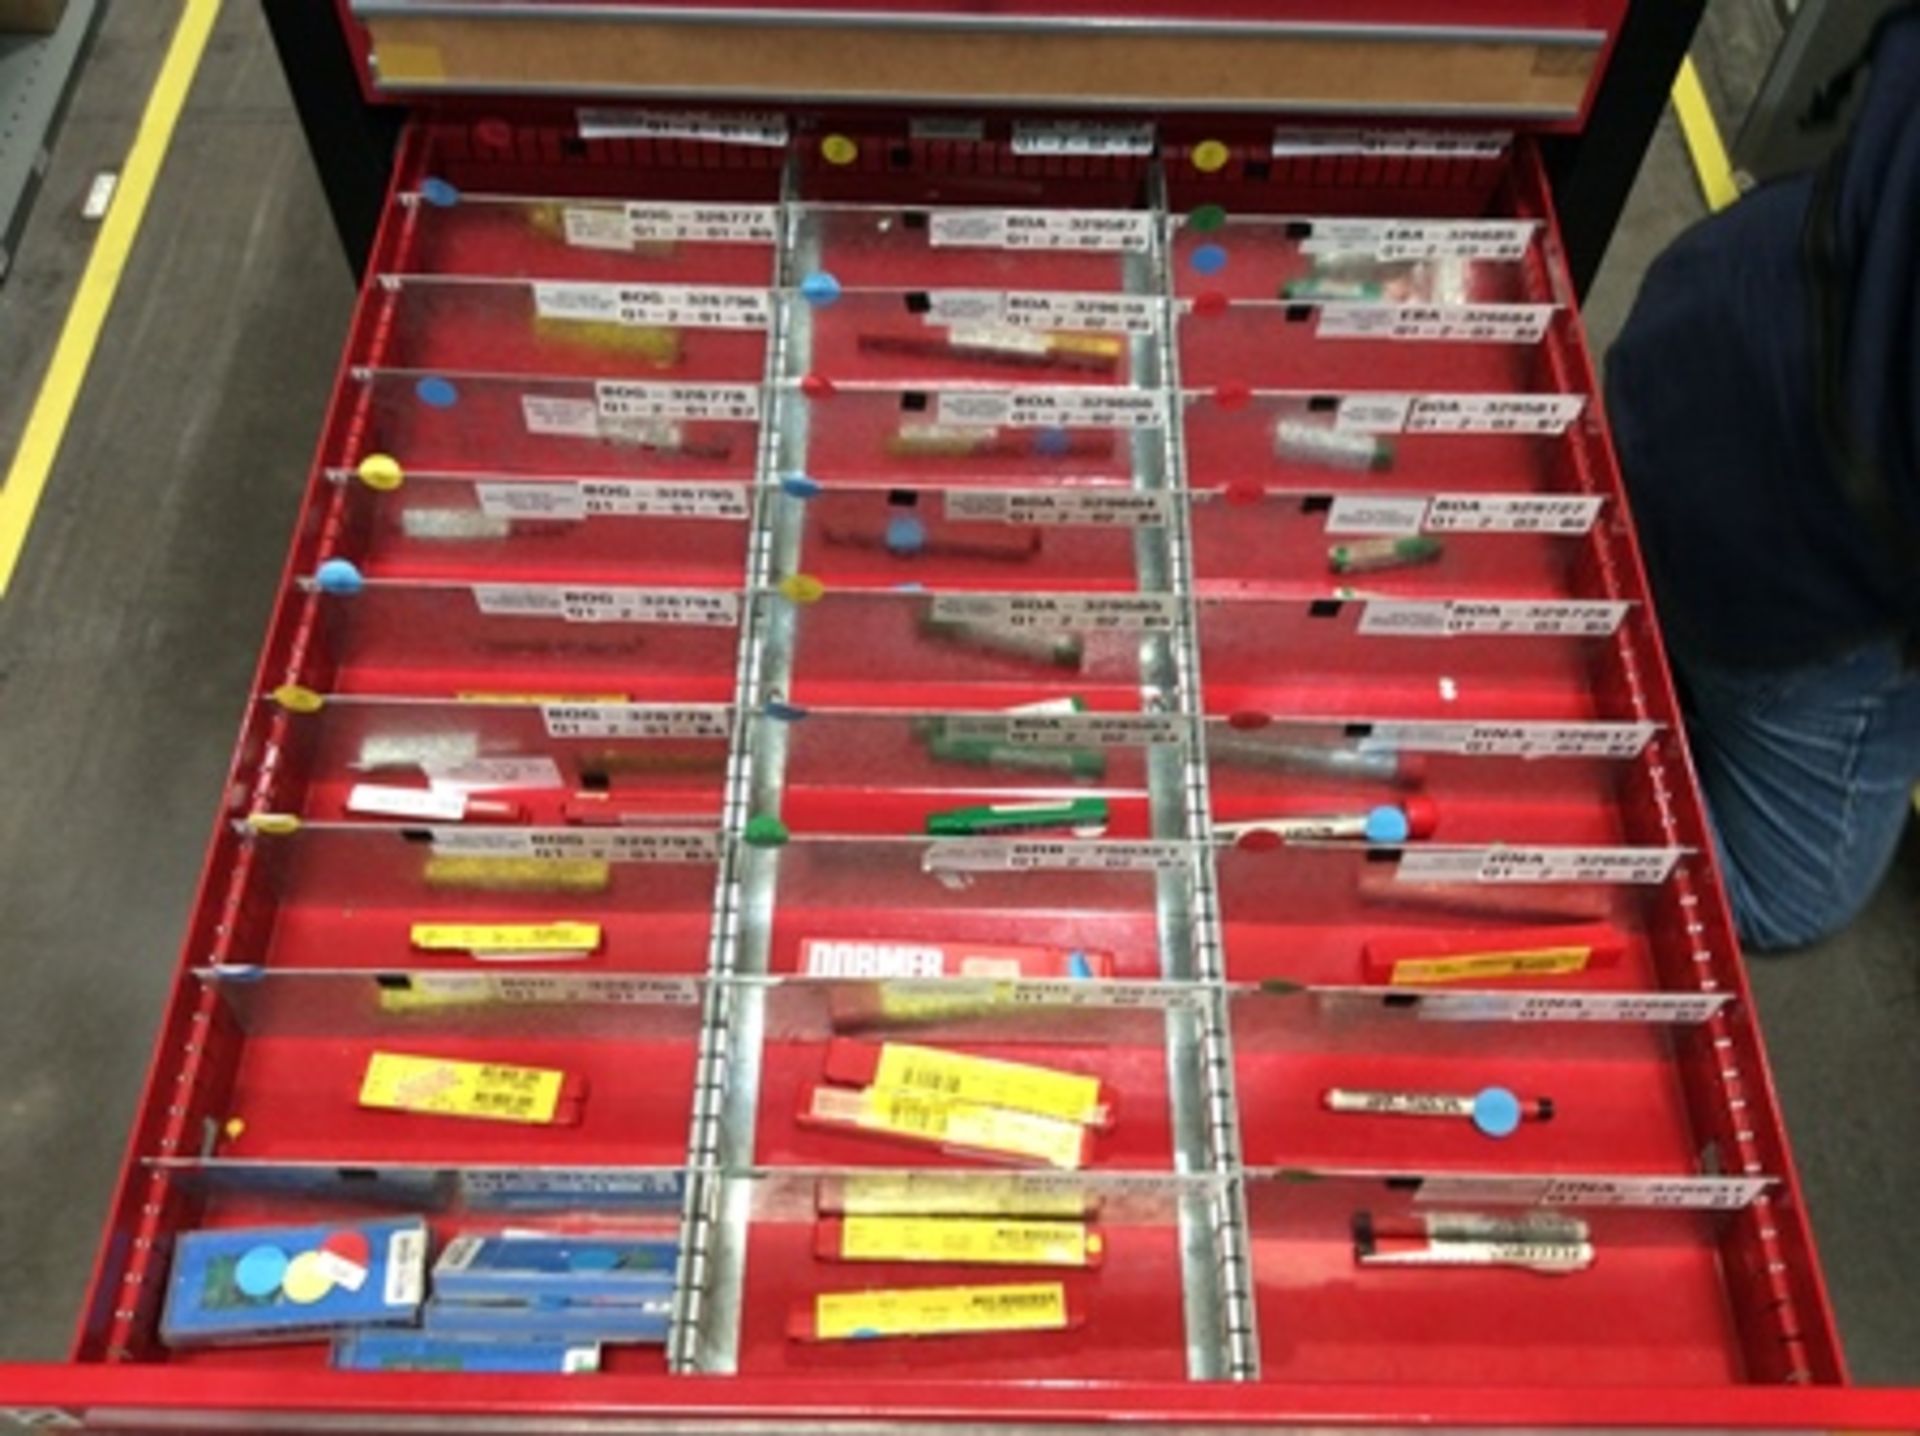 Gaveta de herramientas con 7 cajones que contiene; brocas, insertos, porta insertos, machuelos , - Image 4 of 21